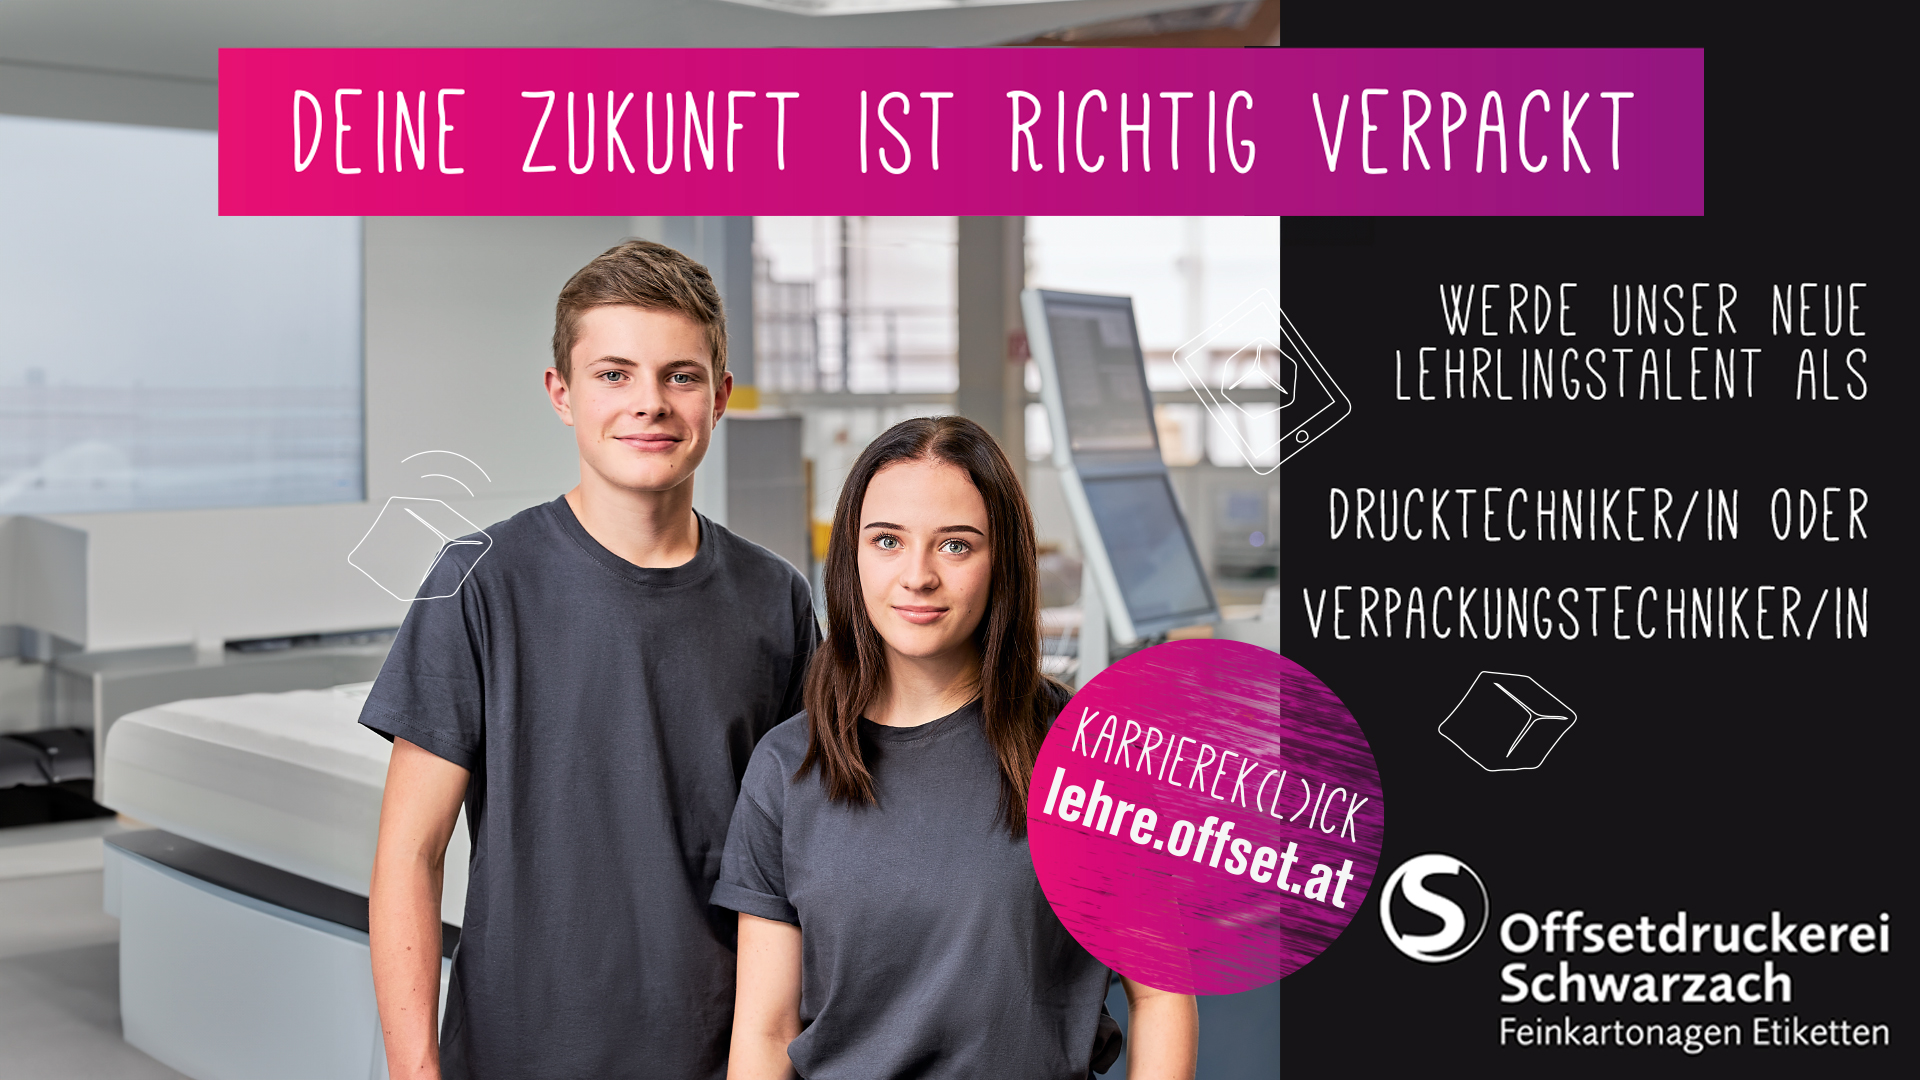 lehre24.at - Offsetdruckerei Schwarzach GmbH